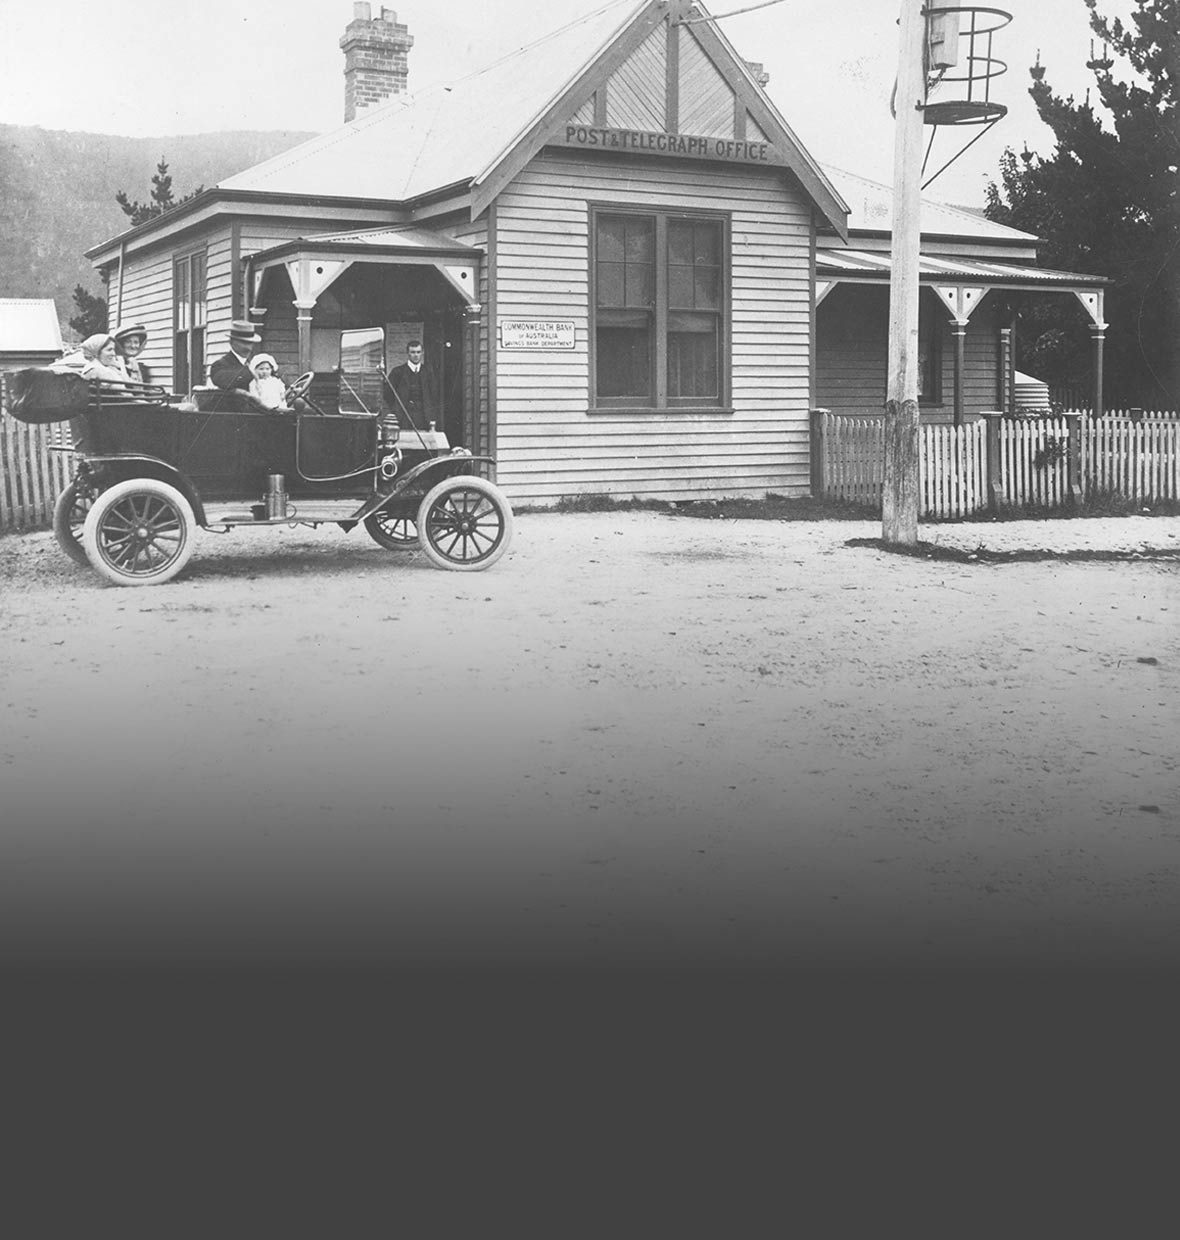 Huonville post office 1916